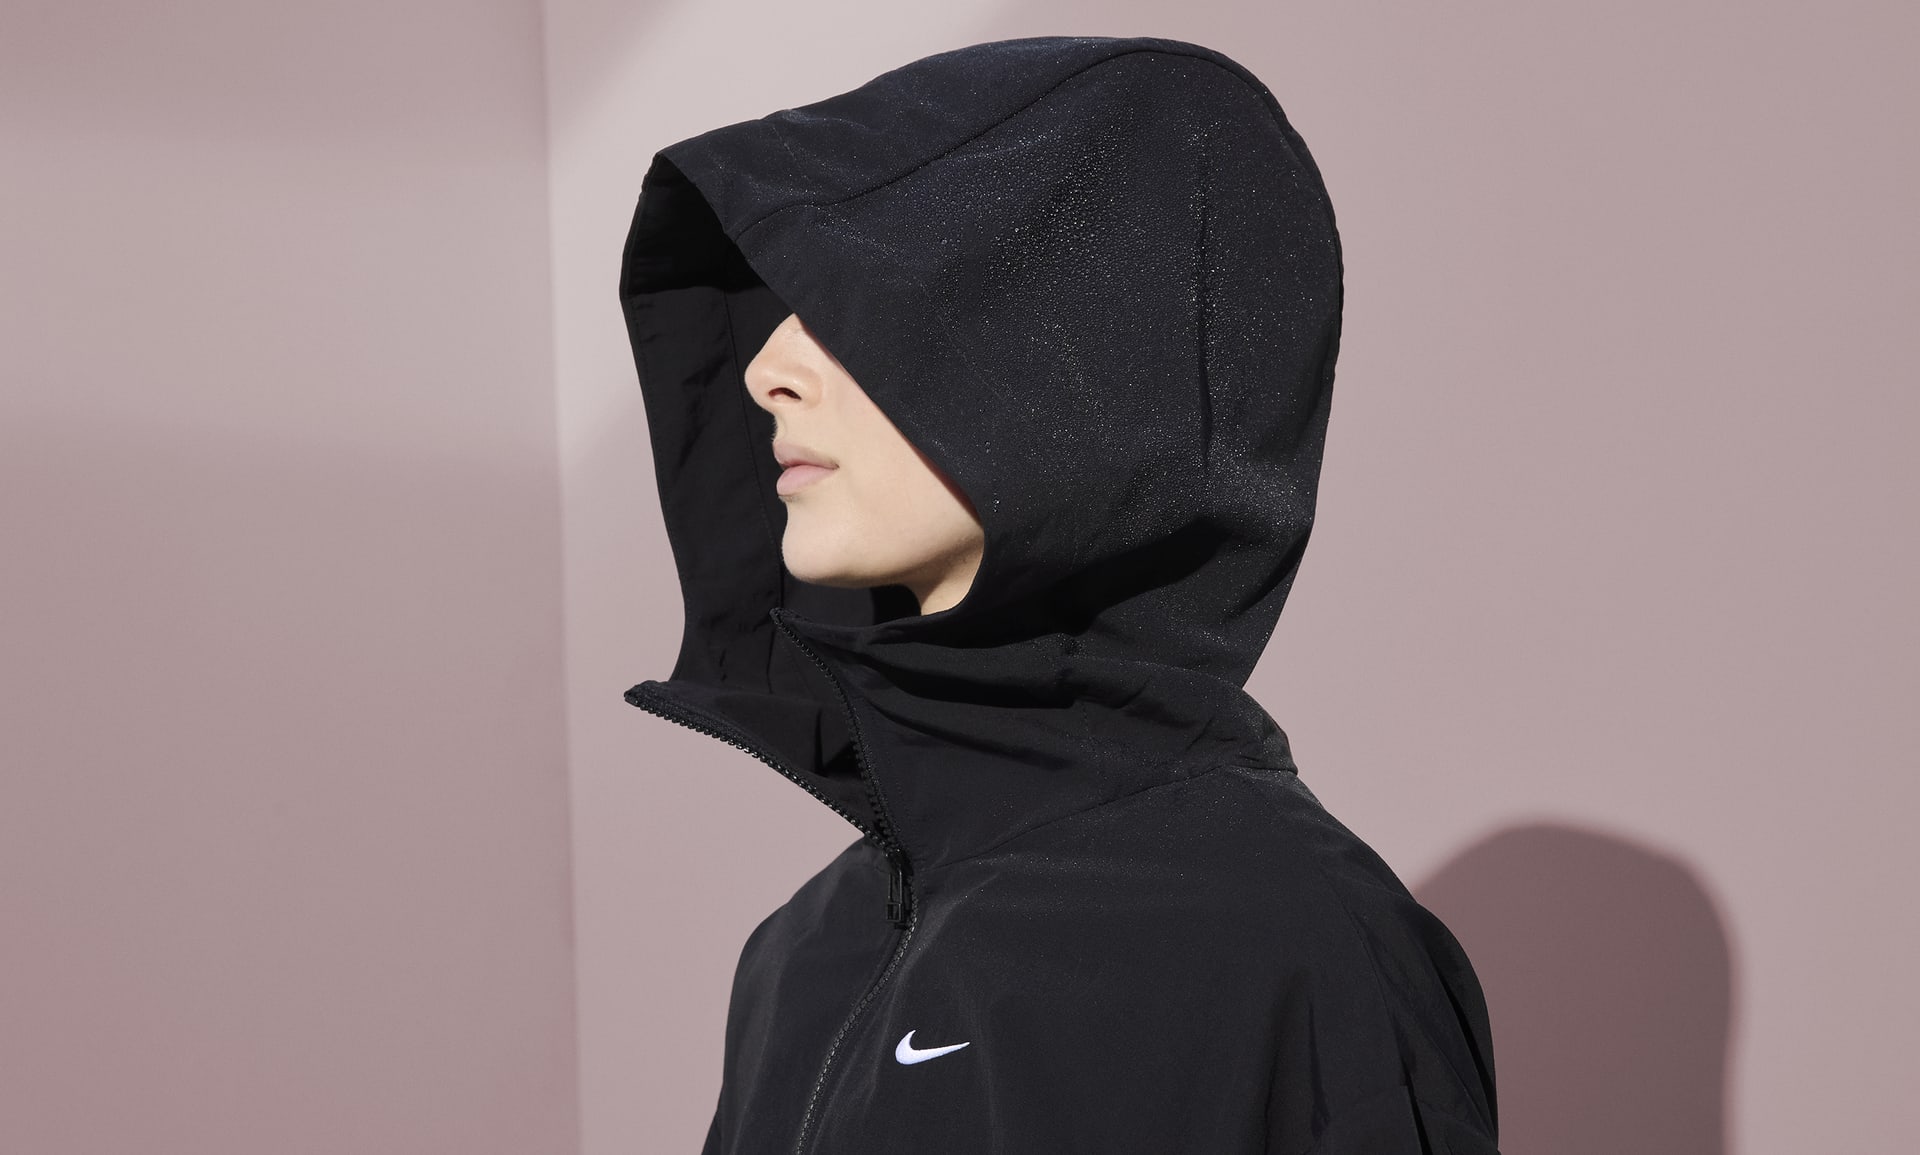 Nike Sportswear Everything Wovens Women's Oversized Hooded Jacket (Plus Size).  Nike.com